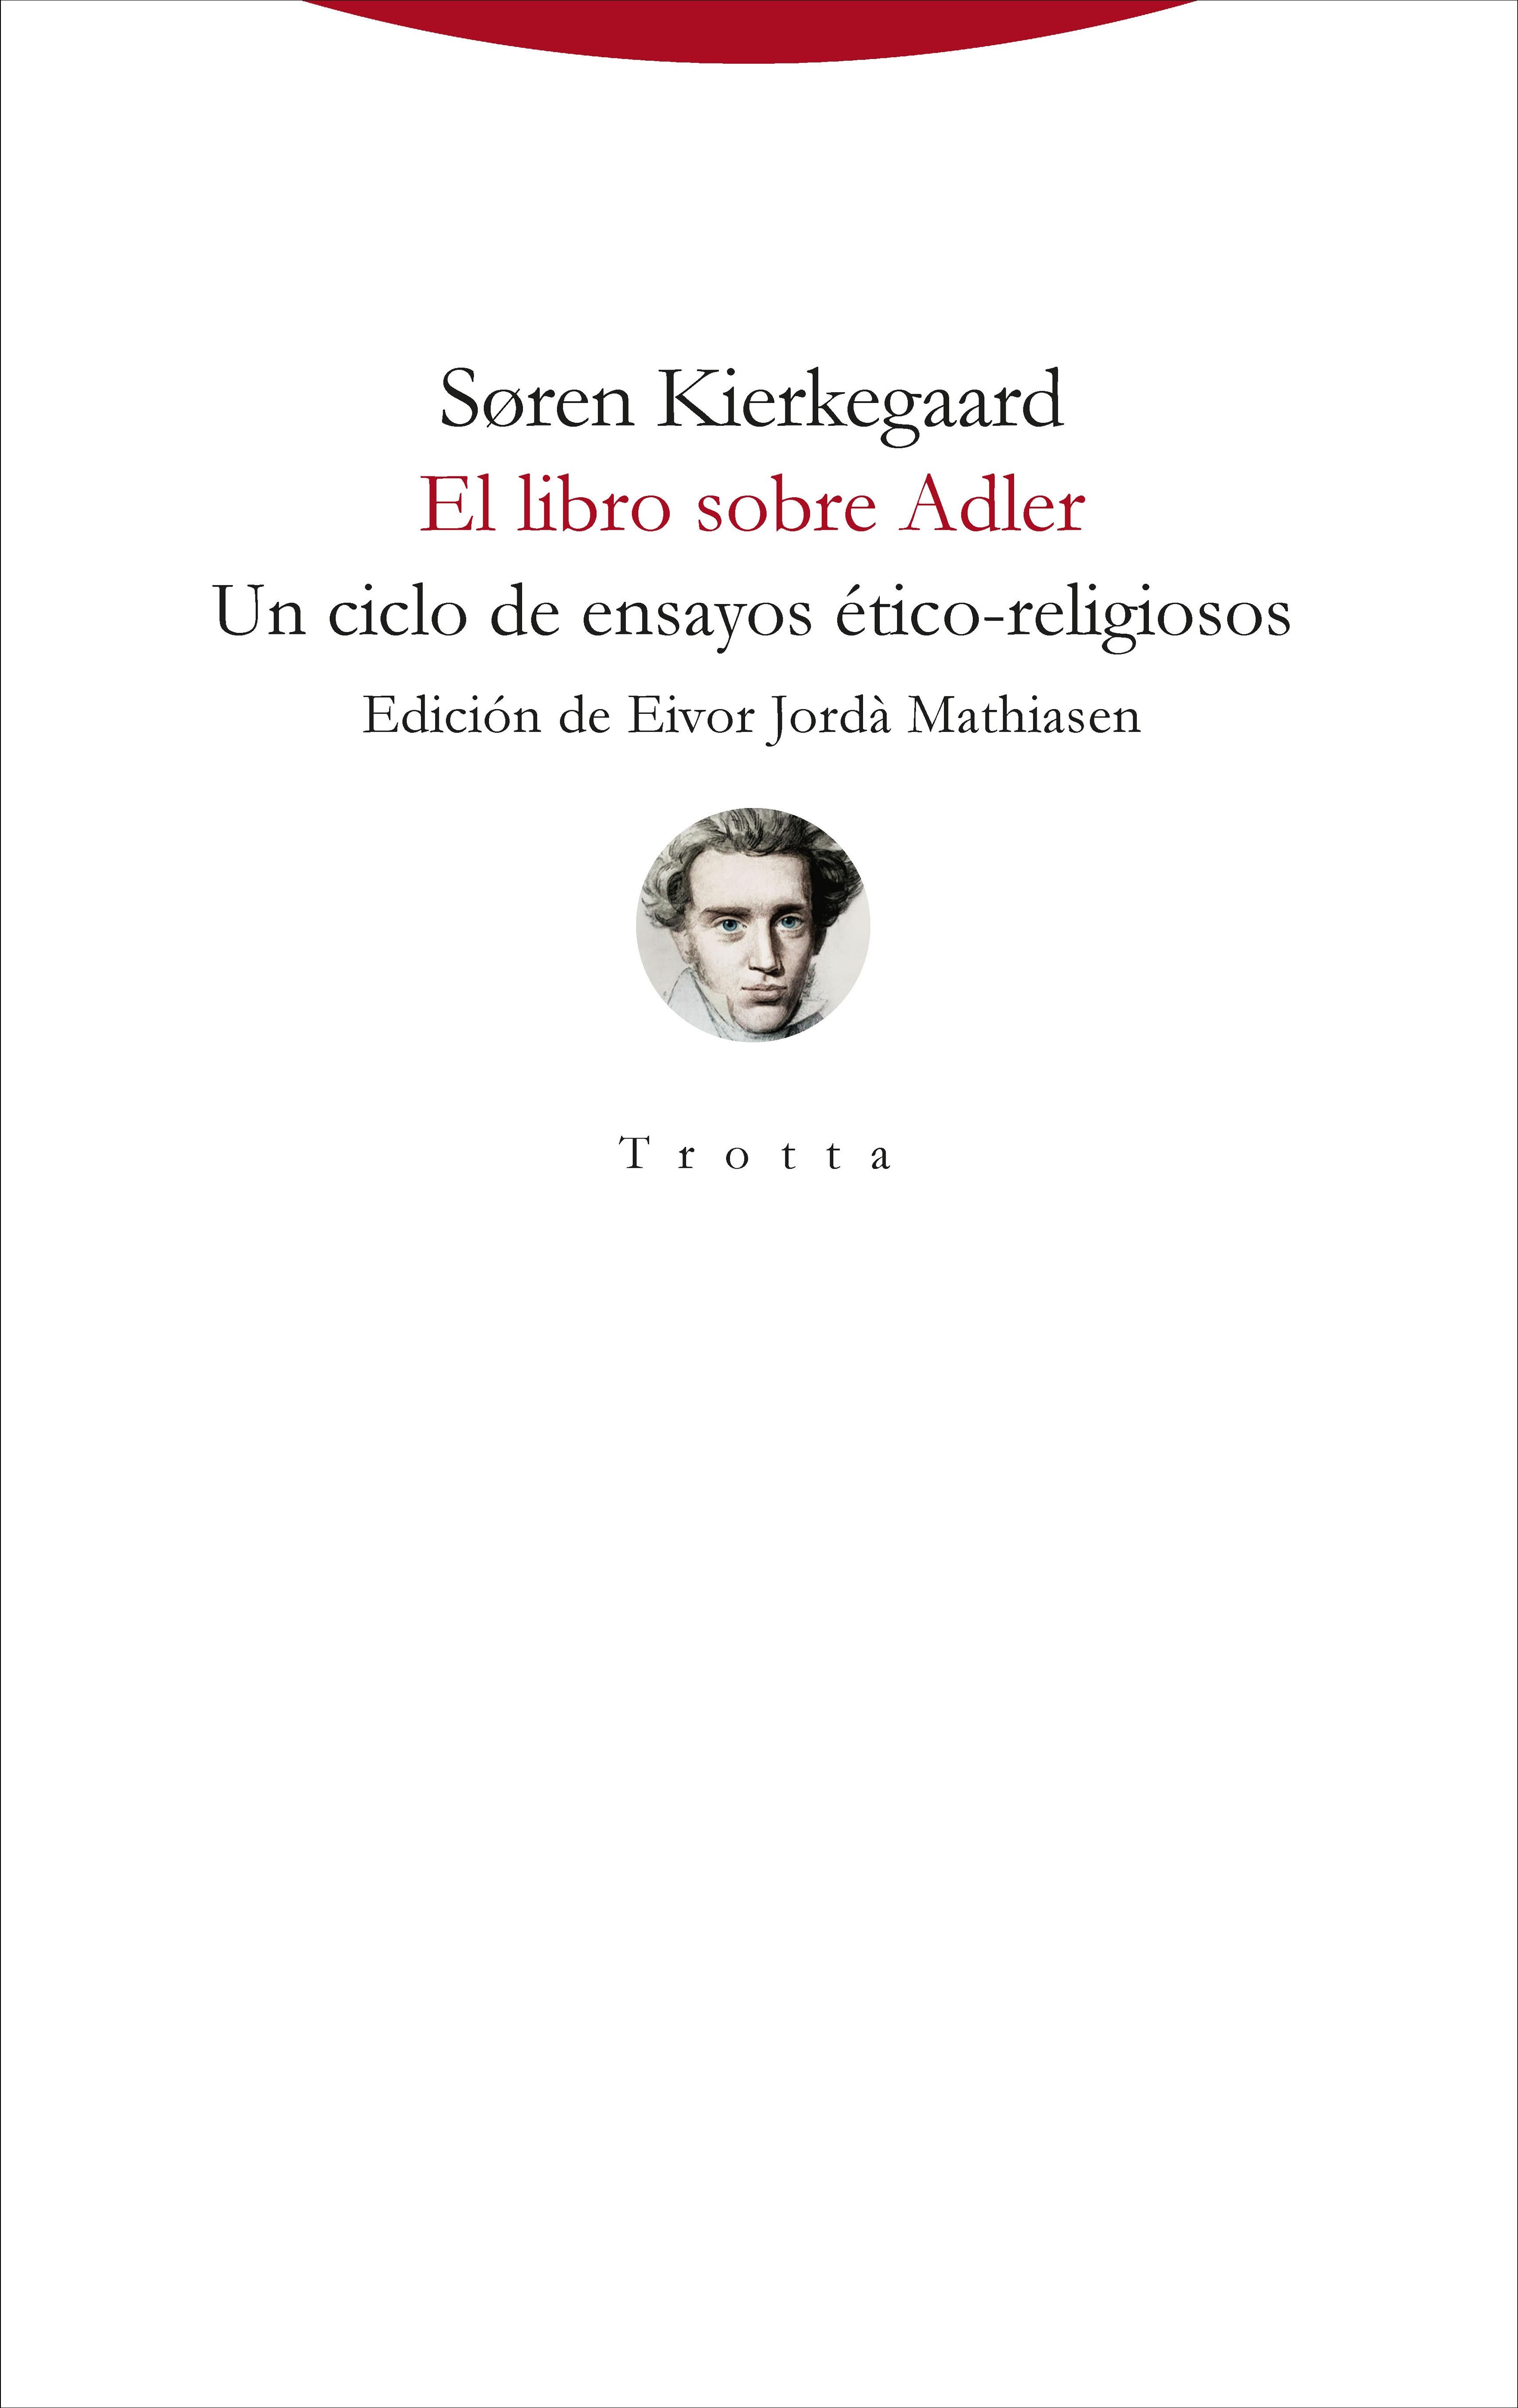 El libro sobre Adler "Un ciclo de ensayos ético-religiosos". 